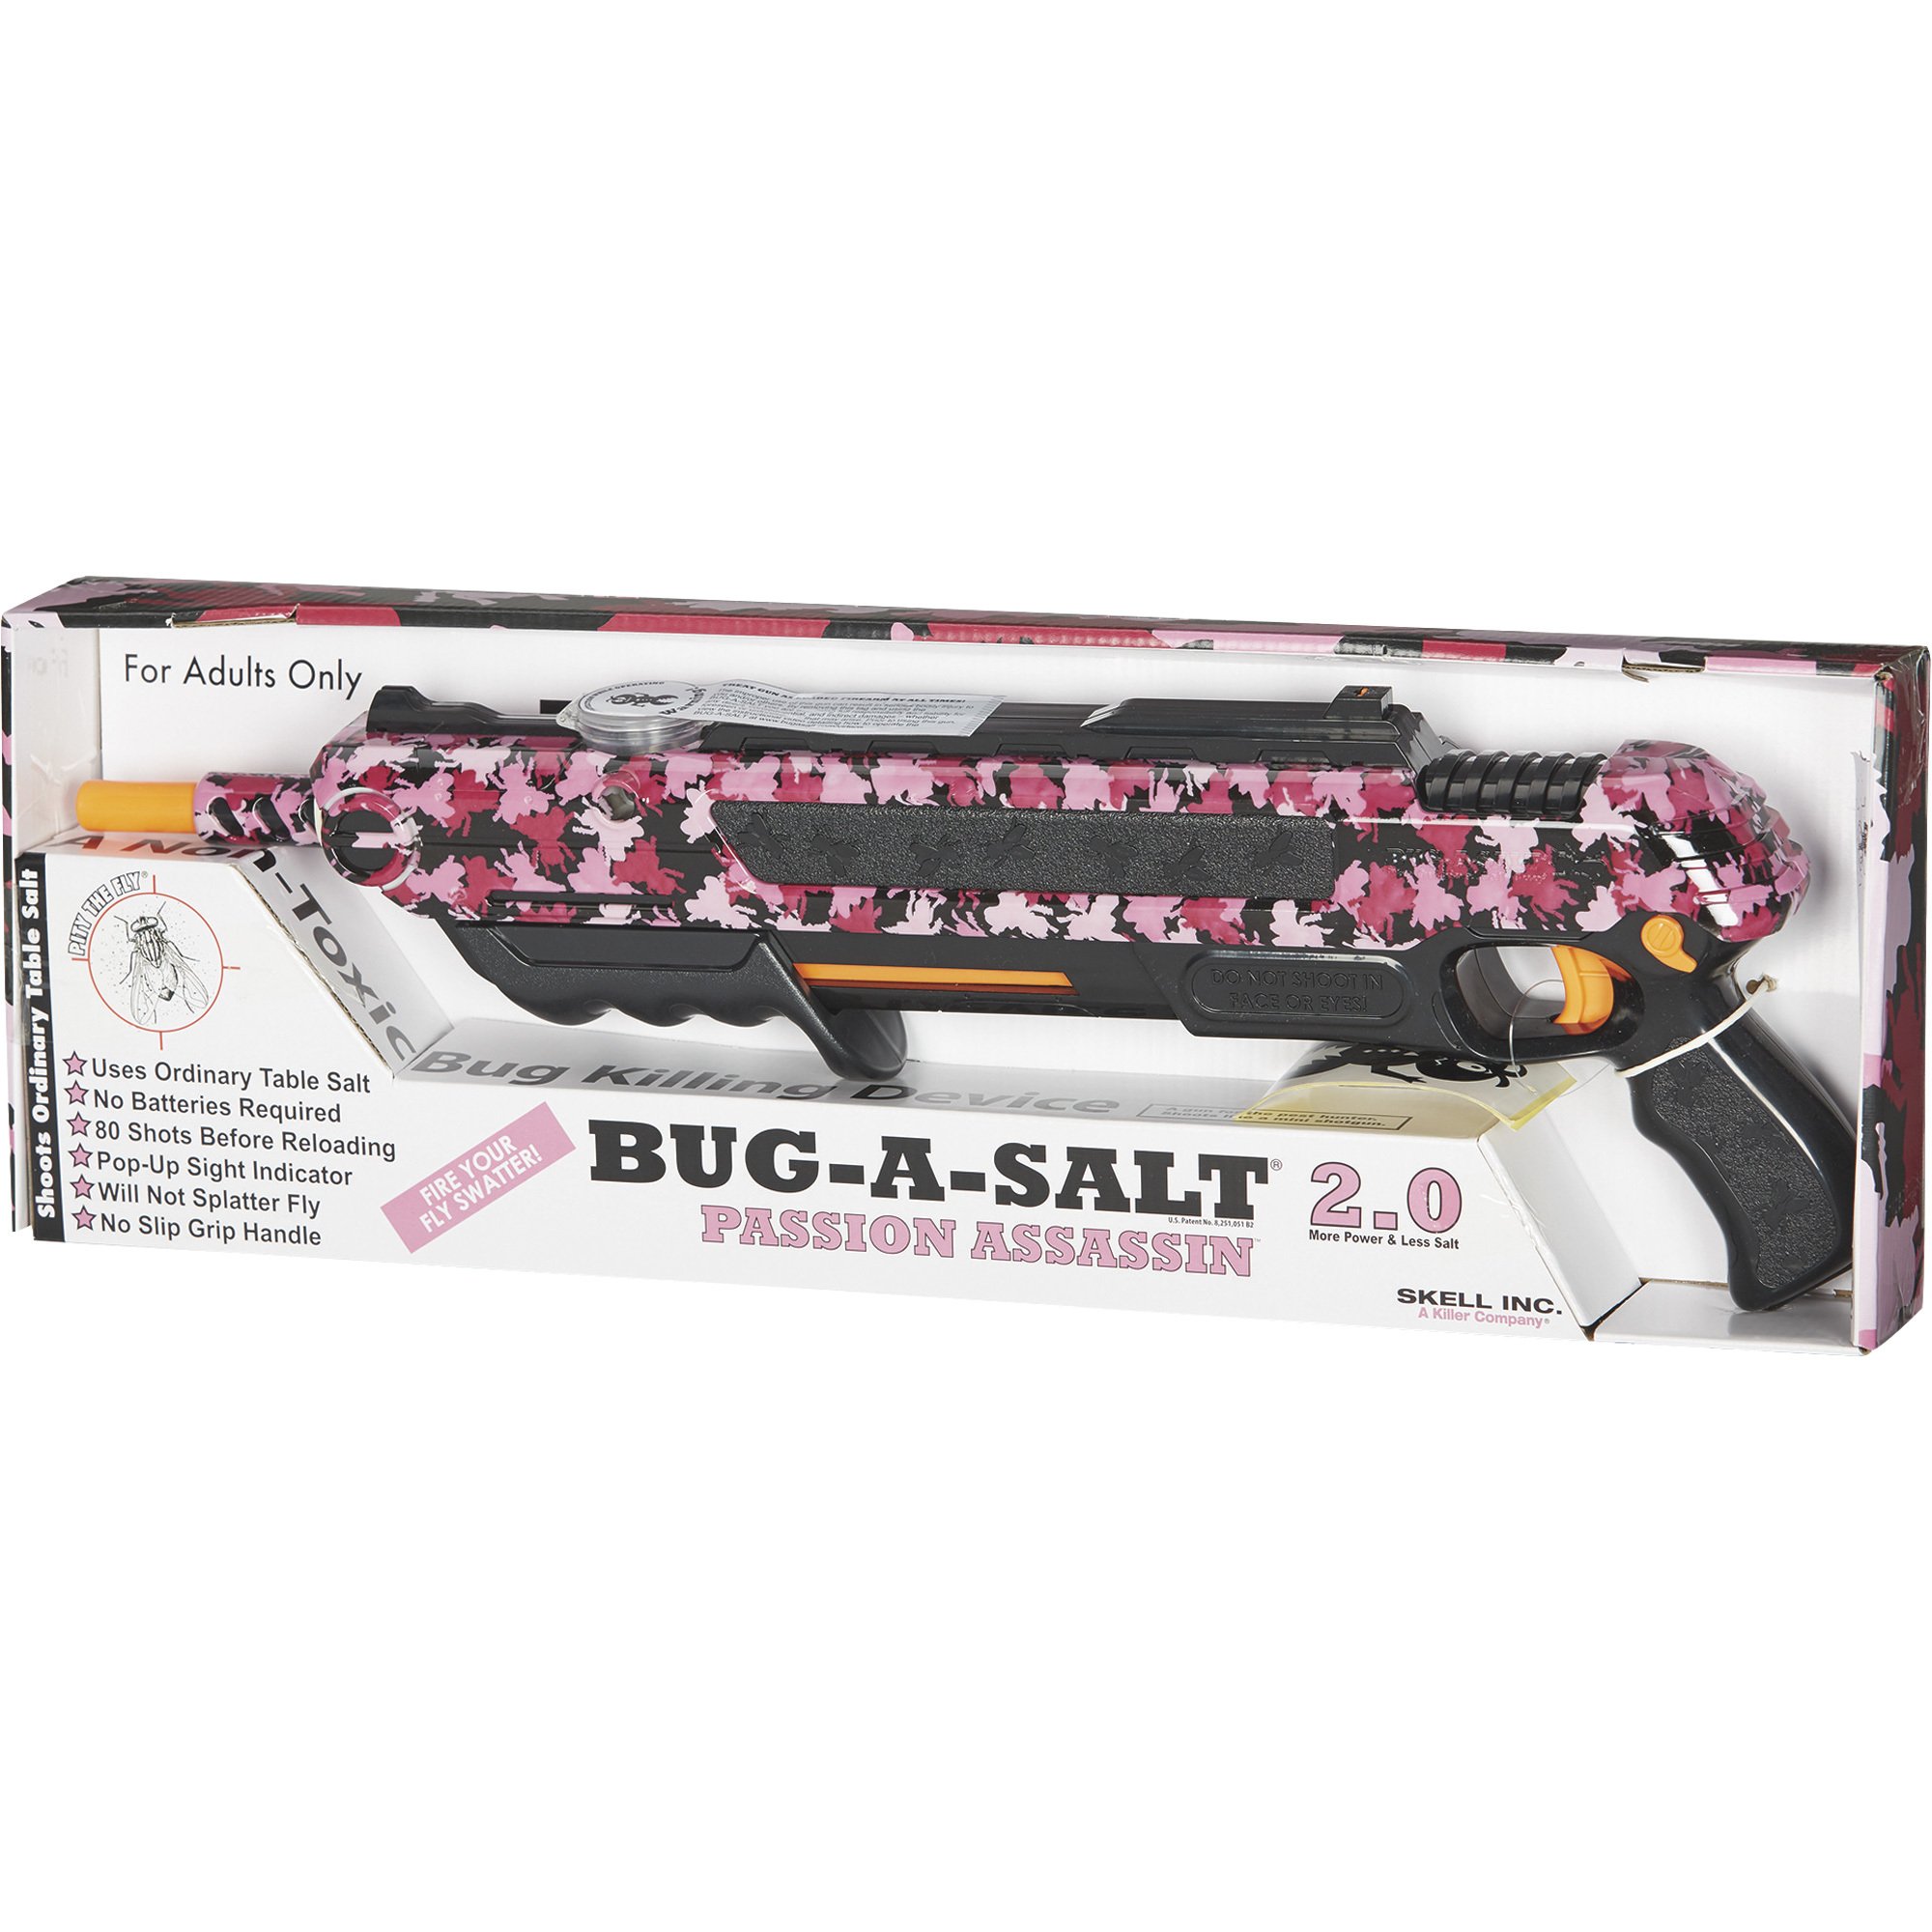 24% off on Bug-A-Salt 2.5 Original Salt Shooter